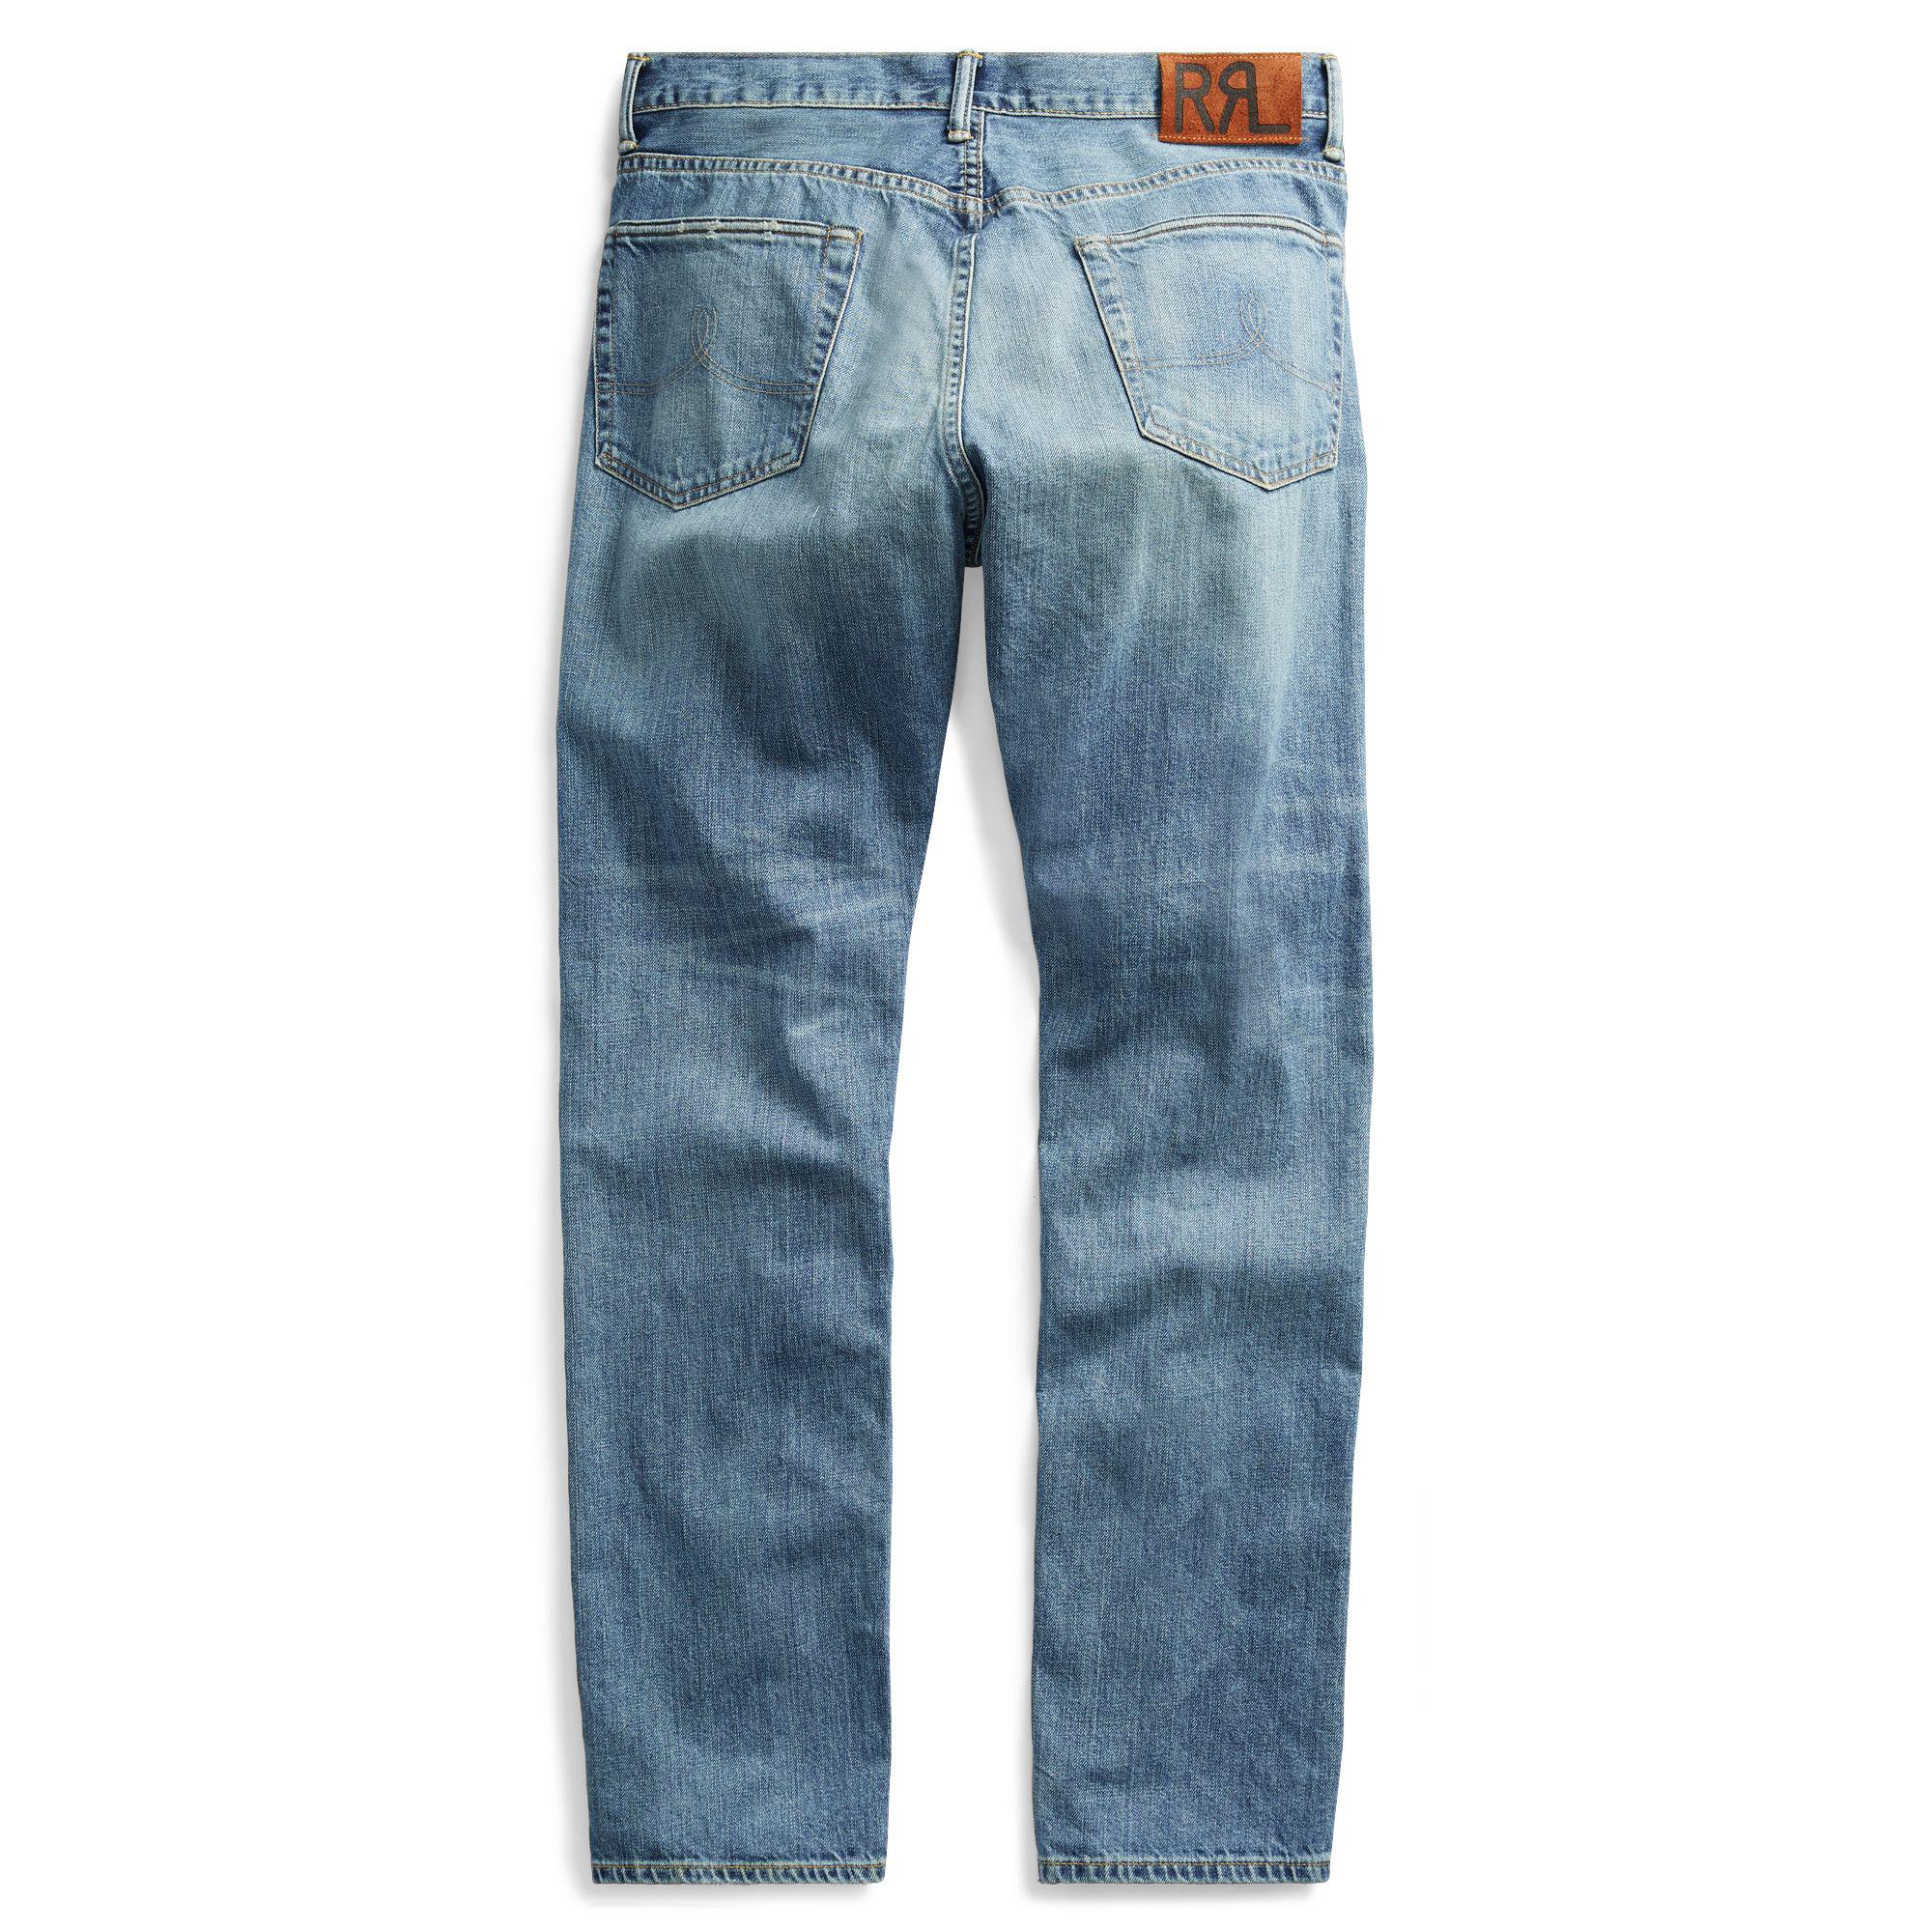 RRL Denim Vintage 5-pocket Selvedge Jean in Blue for Men - Lyst